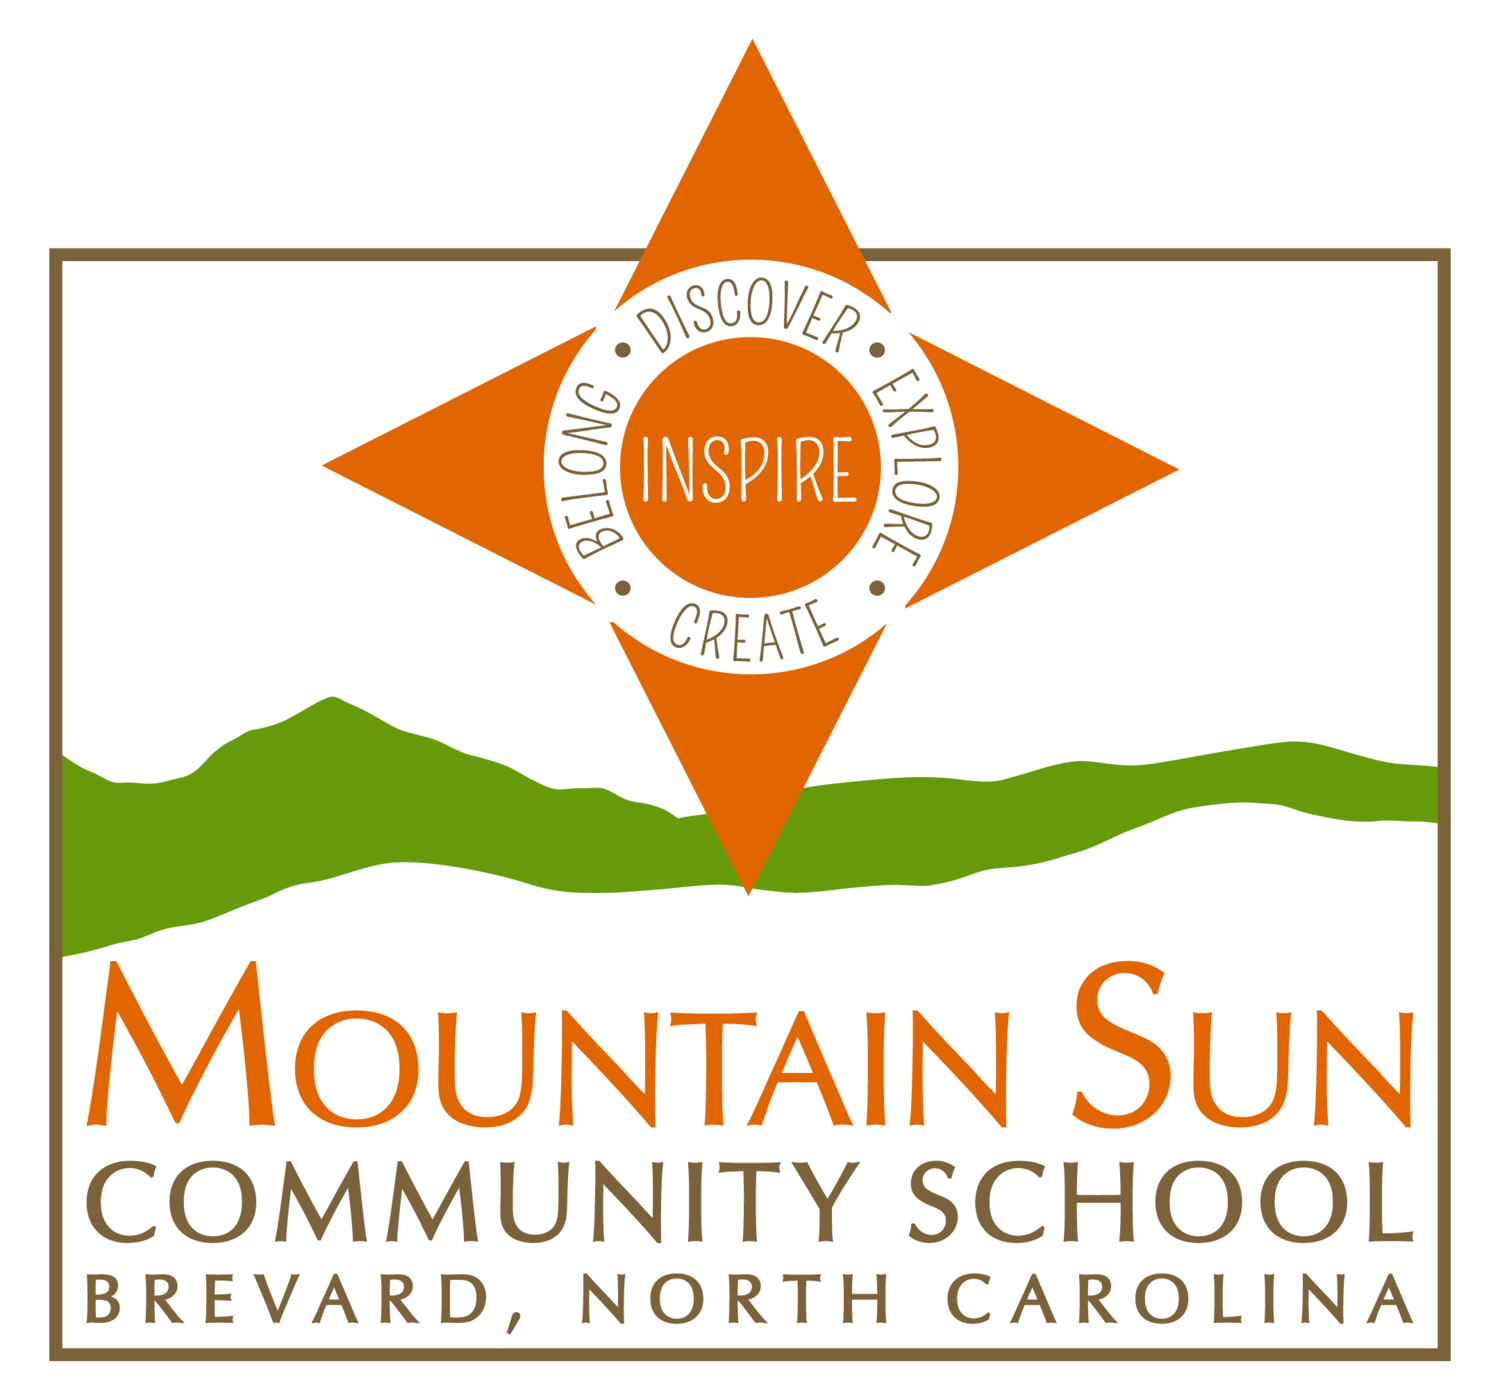 Mountain Sun Community School